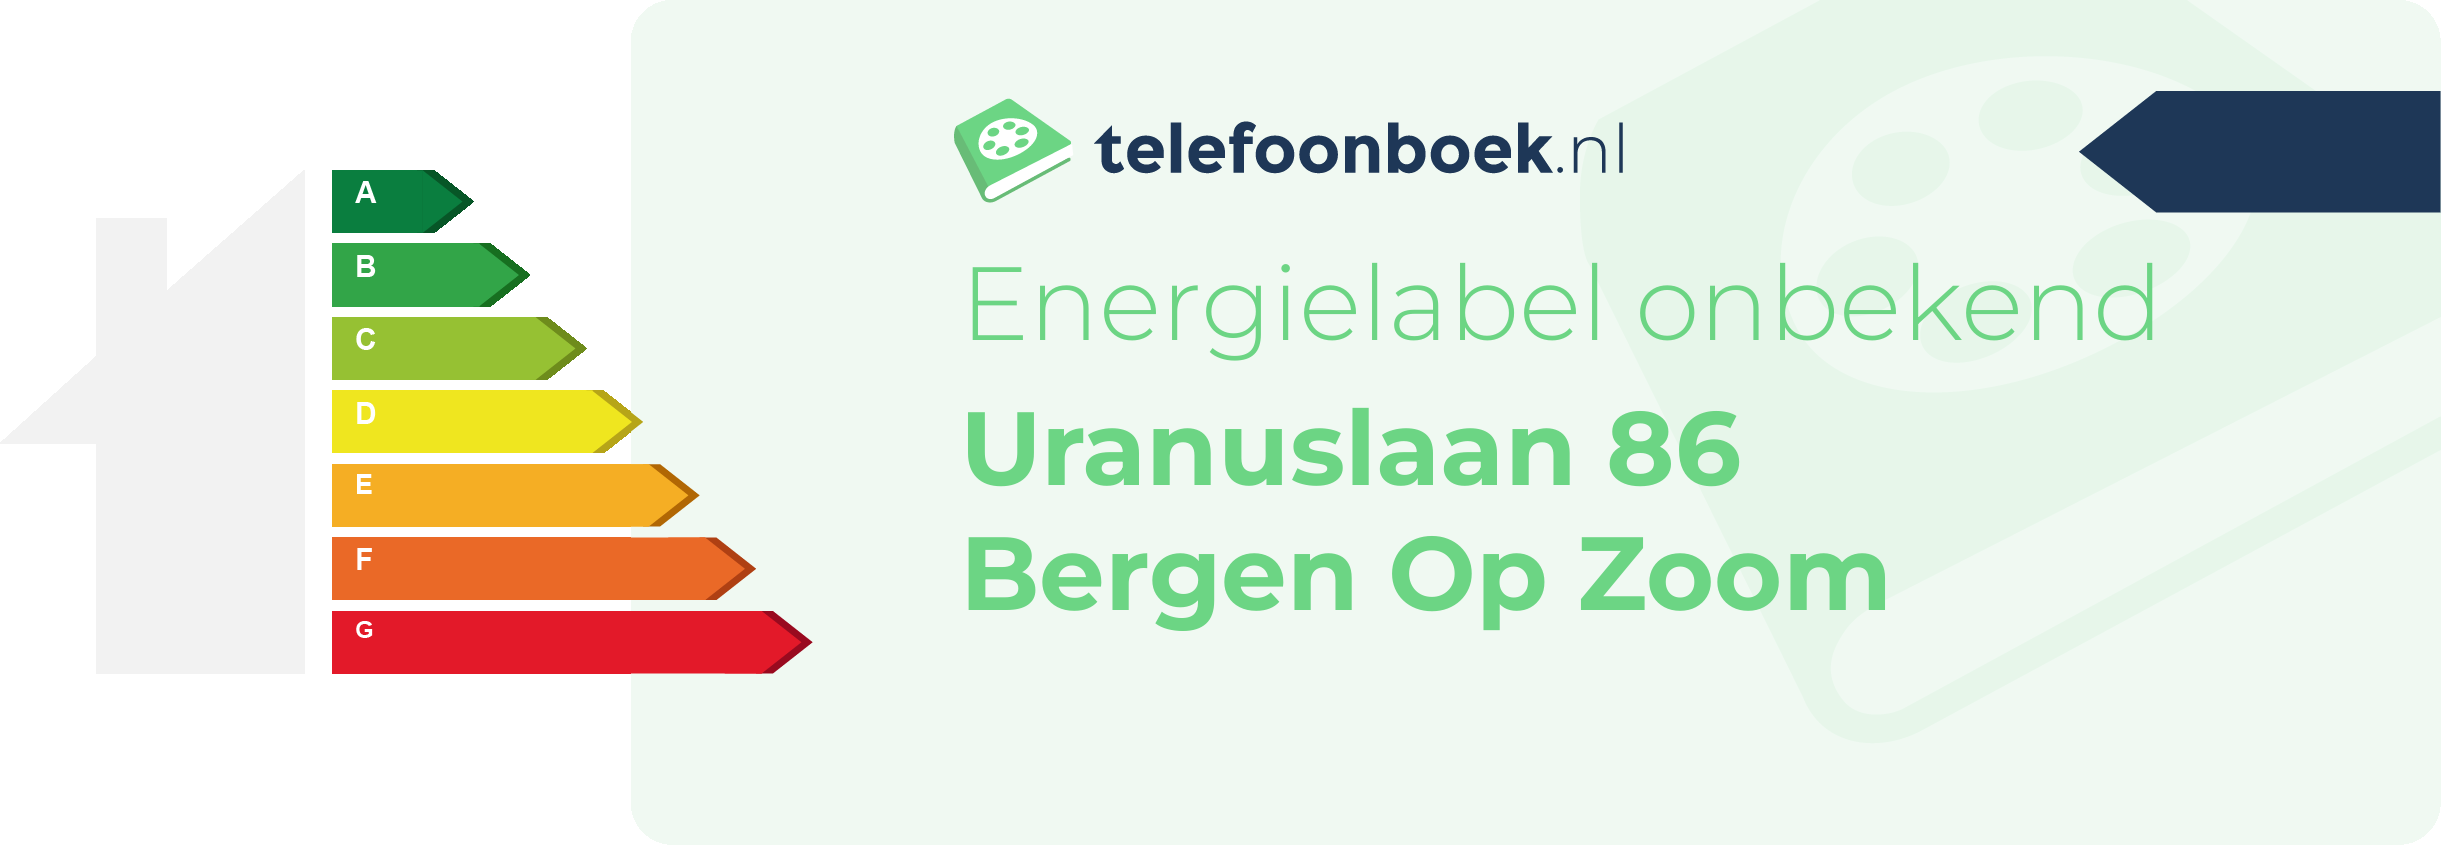 Energielabel Uranuslaan 86 Bergen Op Zoom